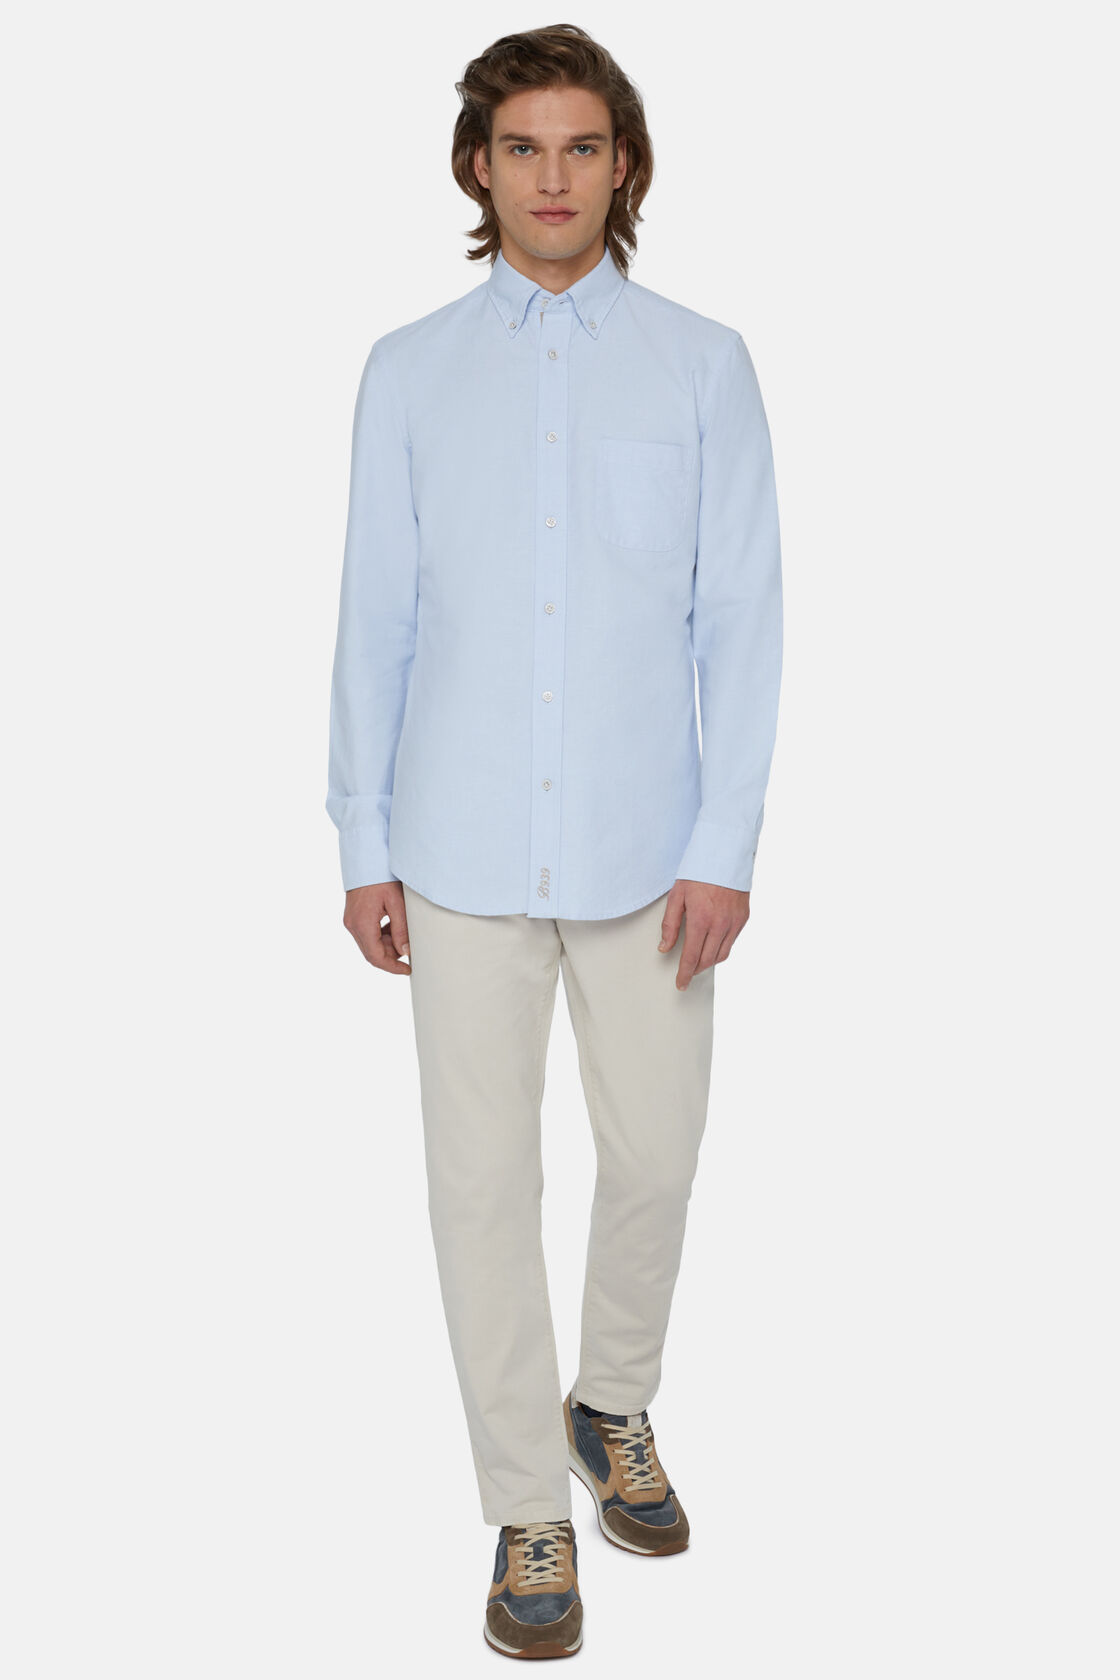 Σιέλ πουκάμισο Oxford από οργανικό βαμβάκι, με κανονική εφαρμογή, Light Blue, hi-res